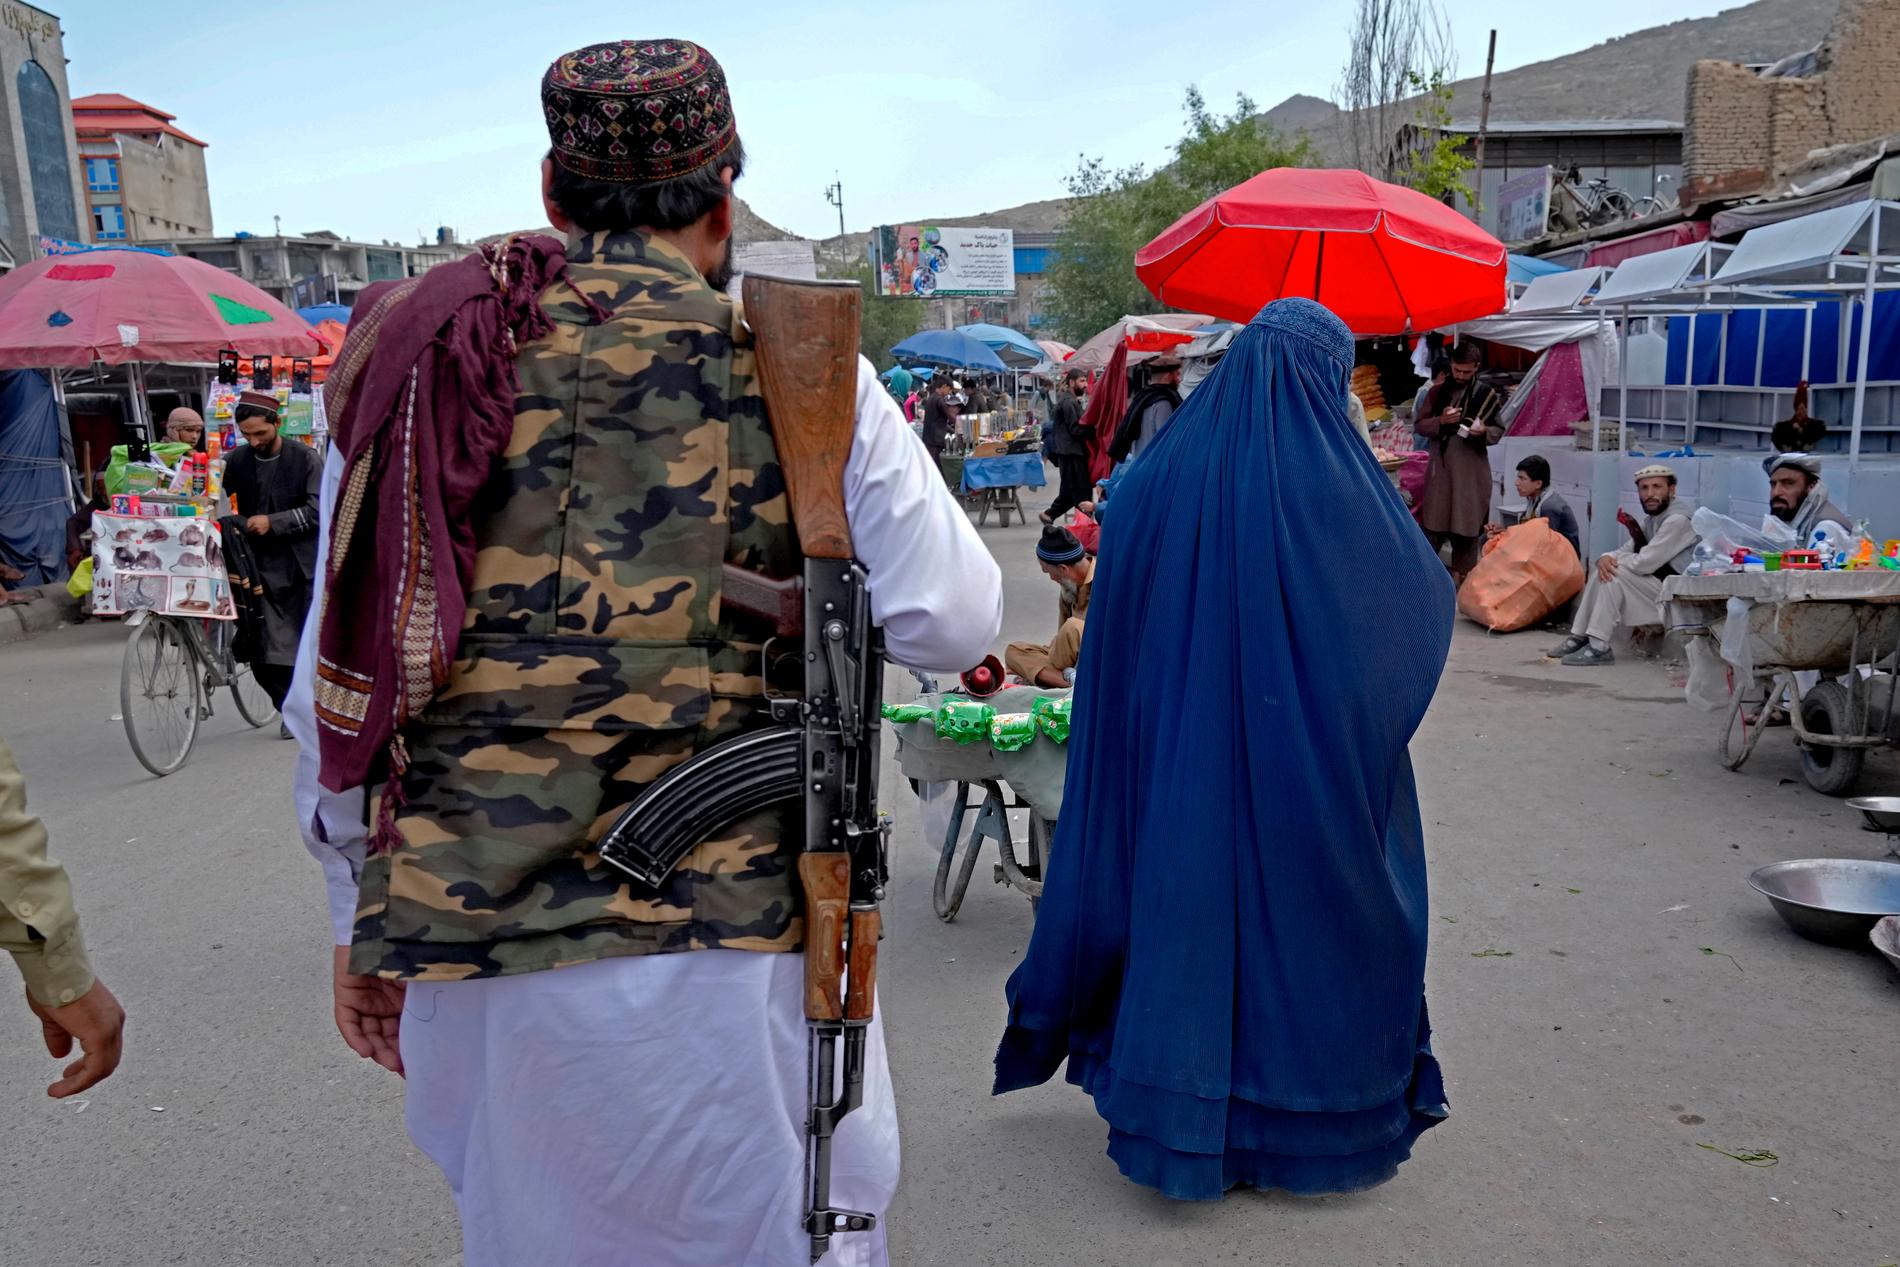 En kvinna i burka går genom en marknad i Kabul, Afghanistan, tidigare i maj. Hårda restriktioner har införts för kvinnor sedan talibanernas maktövertagande, bland annat ska de bära heltäckande kläder när de rör sig ute. Arkivbild.